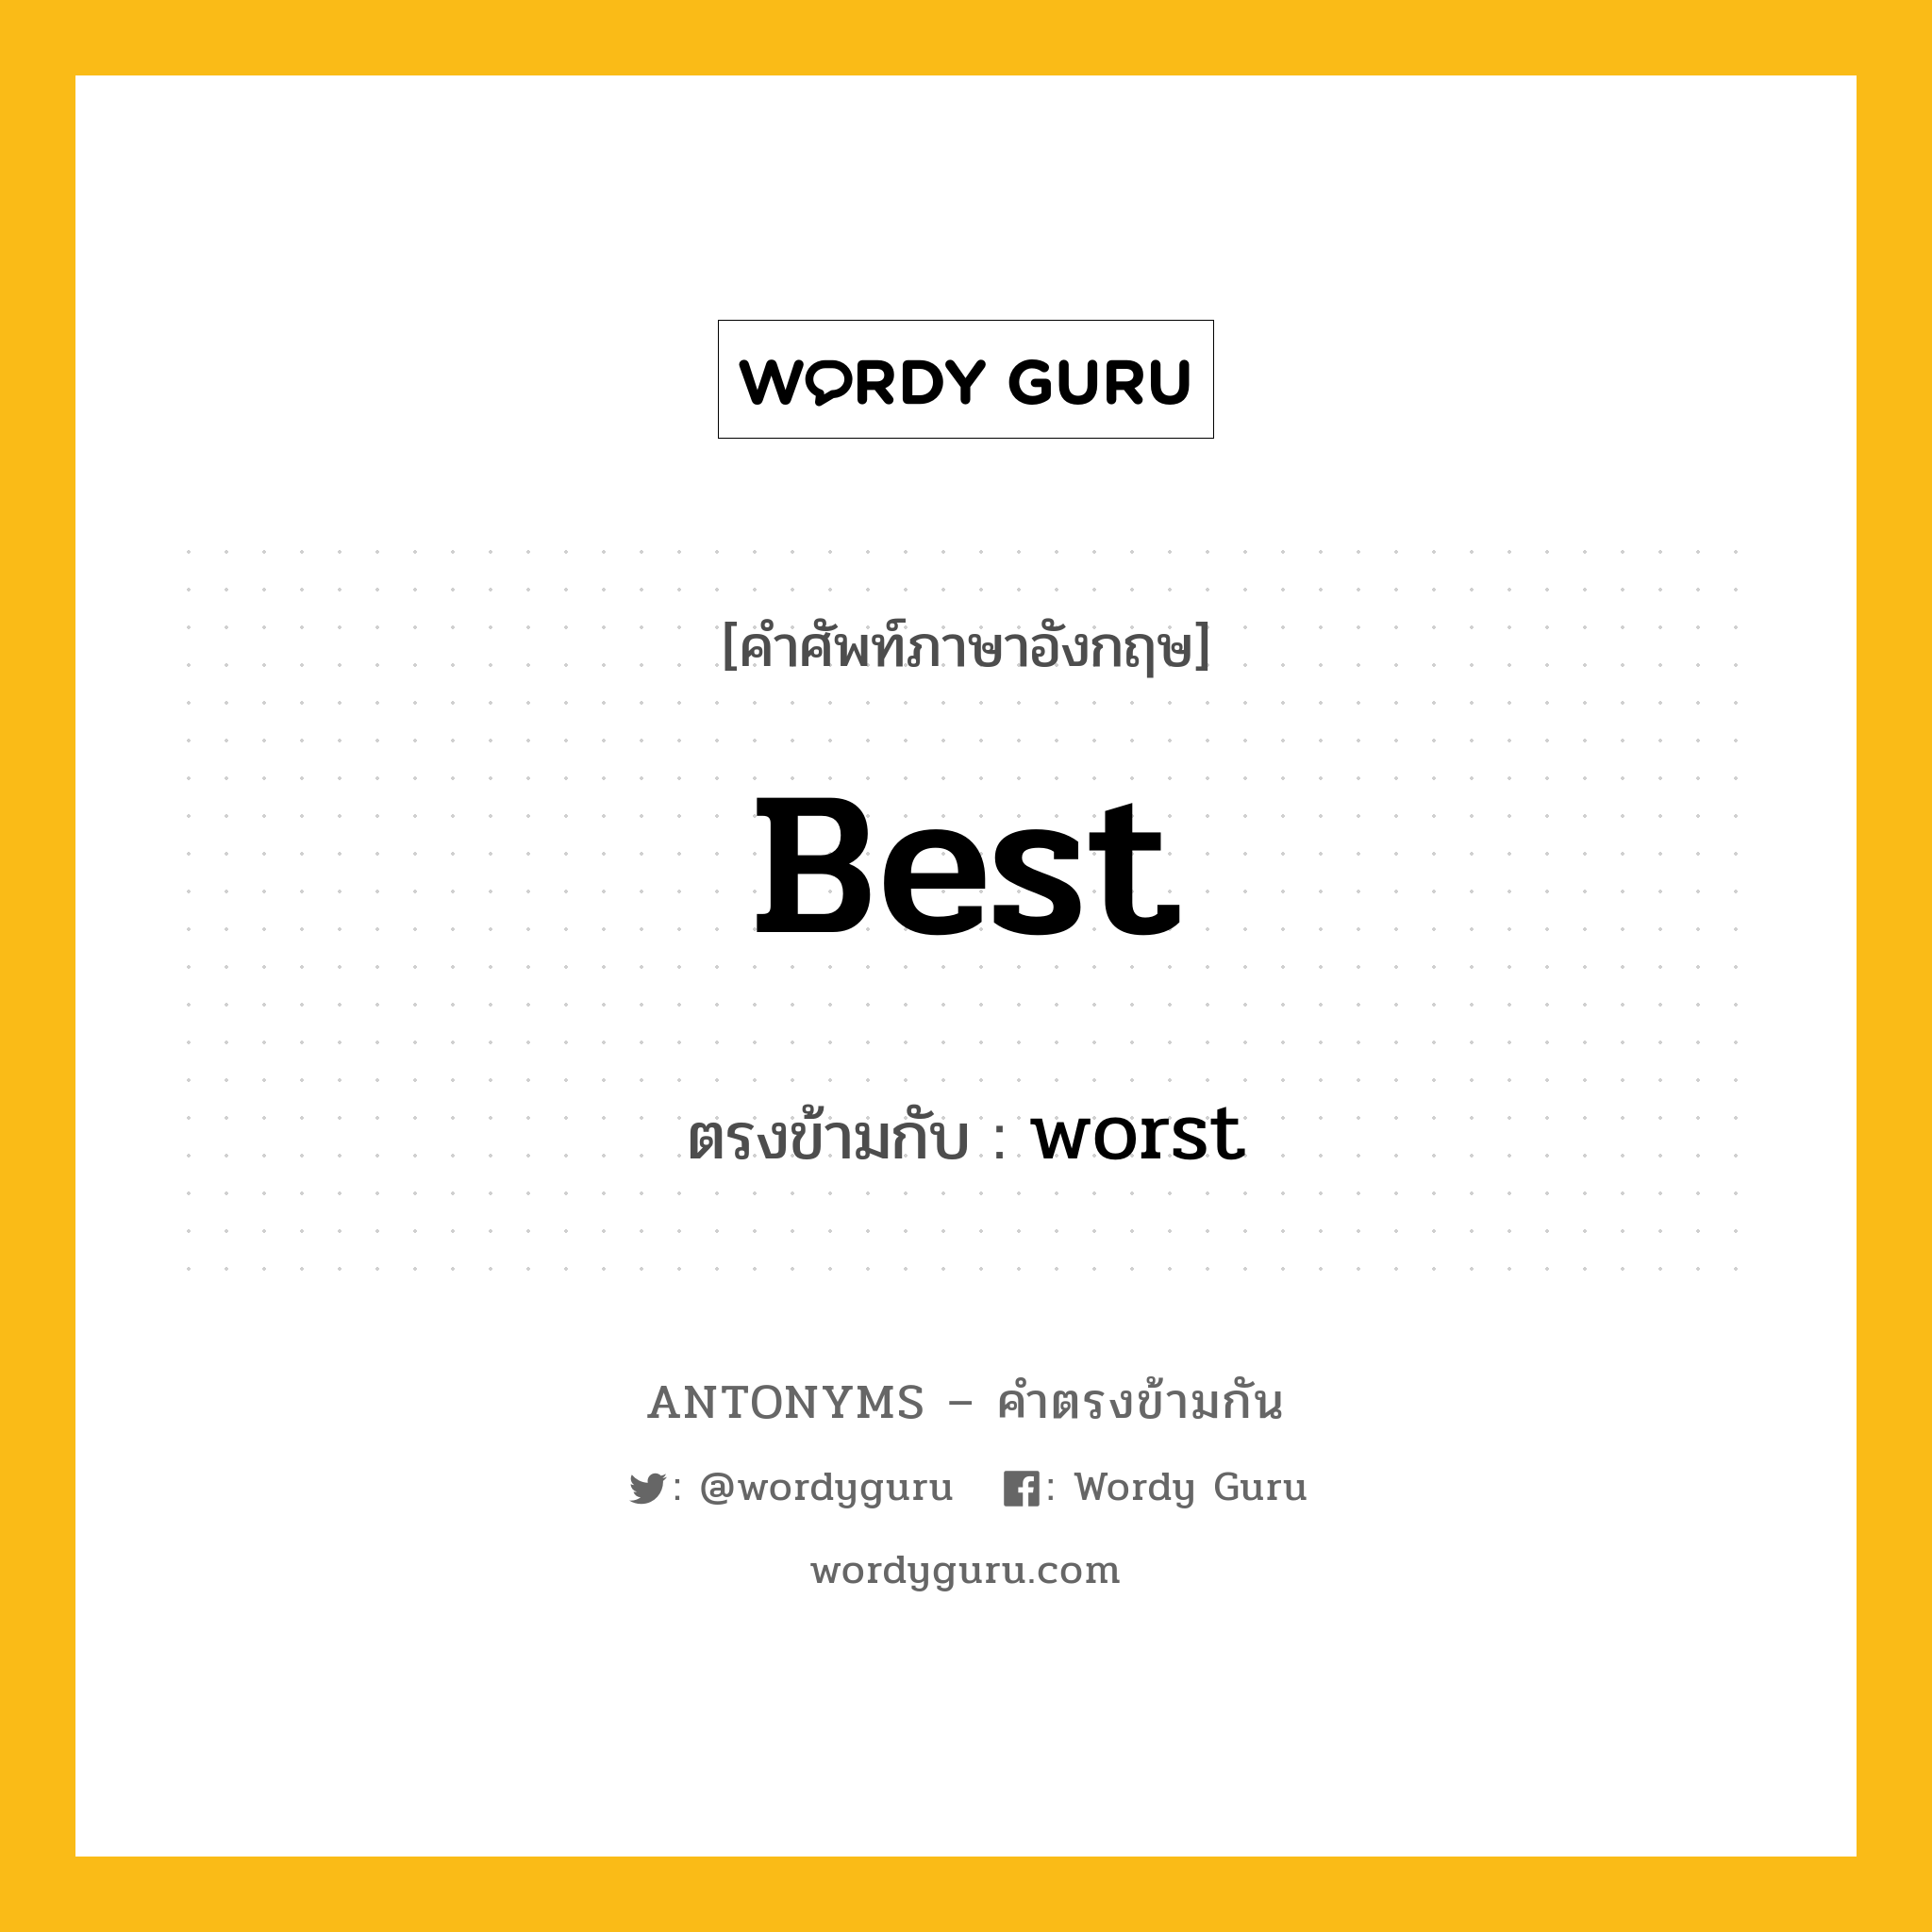 best เป็นคำตรงข้ามกับคำไหนบ้าง?, คำศัพท์ภาษาอังกฤษ best ตรงข้ามกับ worst หมวด worst